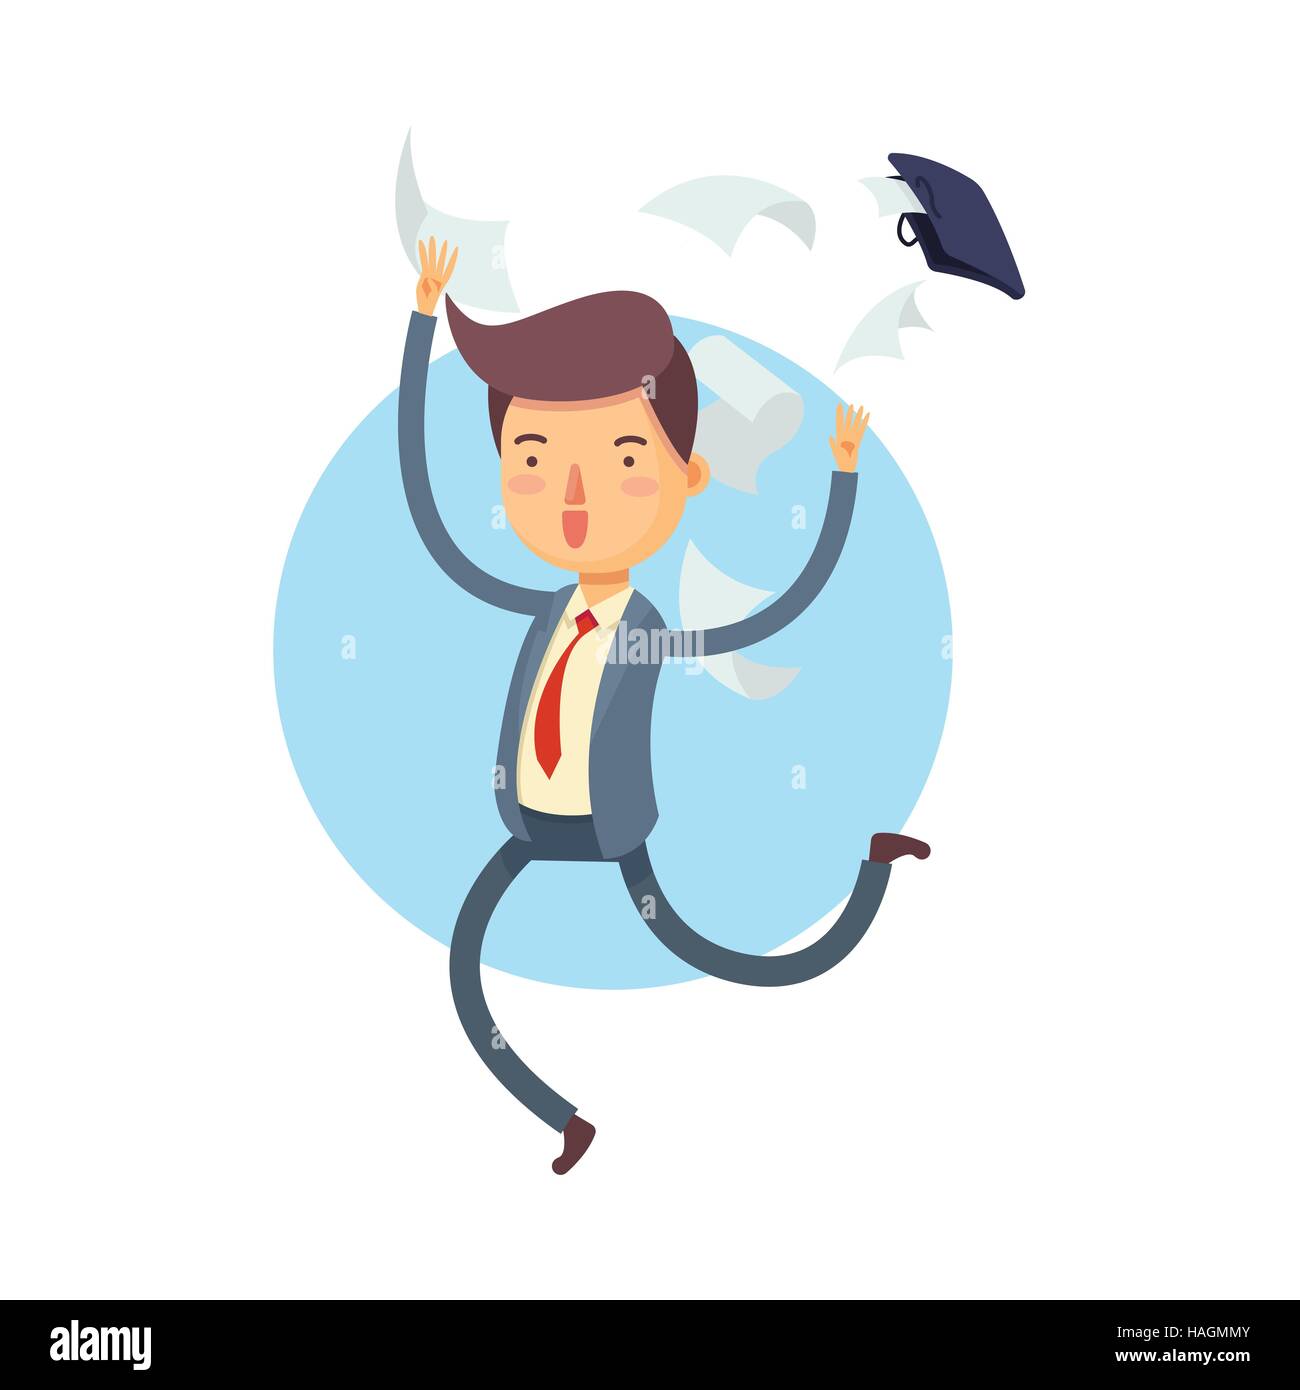 Vektor-Illustration von glücklich Geschäftsmann seine Tasche wegwerfen und dokumentieren Papiere hinausfliegen, Zeichentrickfigur Stock Vektor